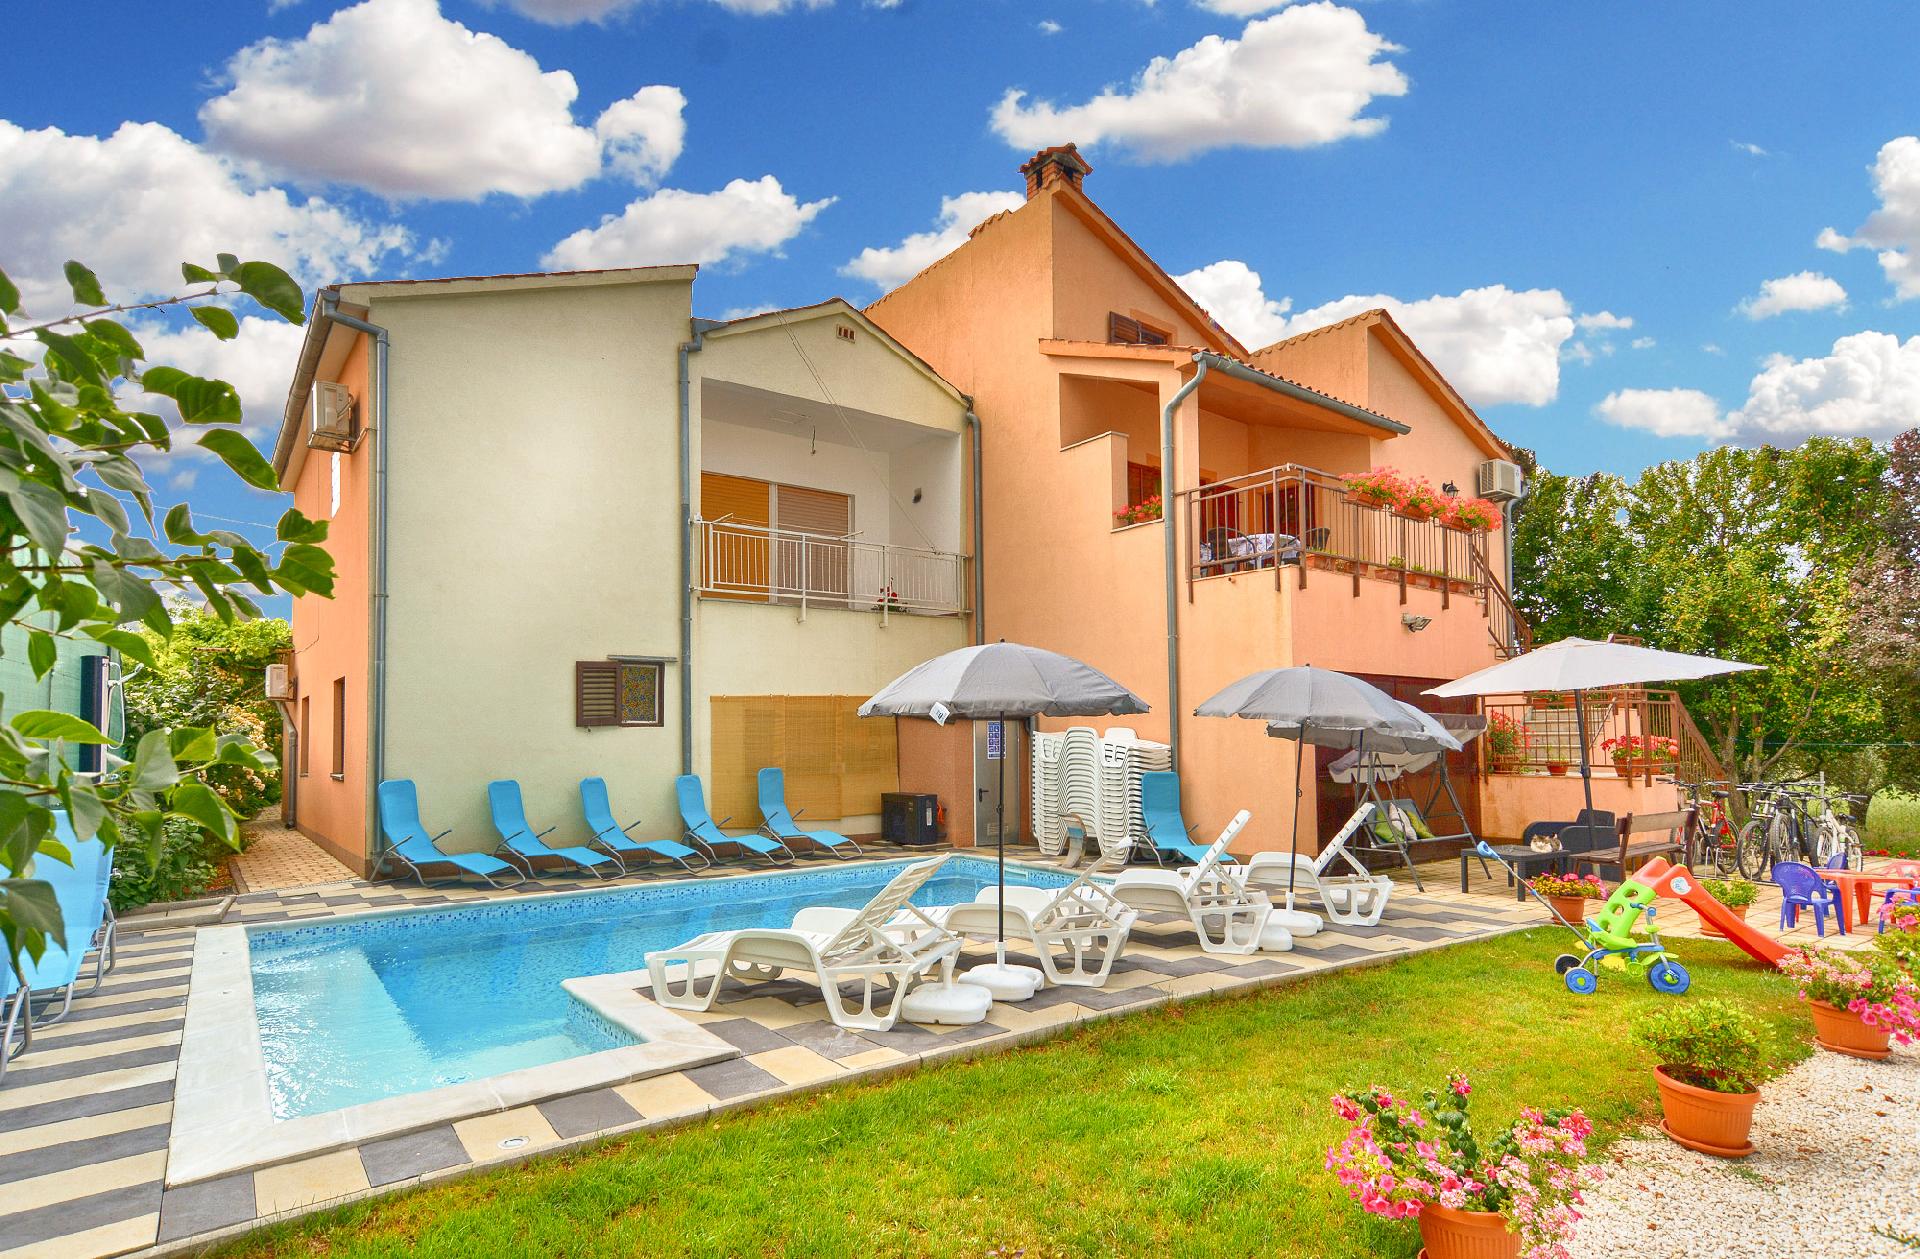 Ferienwohnung für 8 Personen ca. 75 m² i  in Kroatien